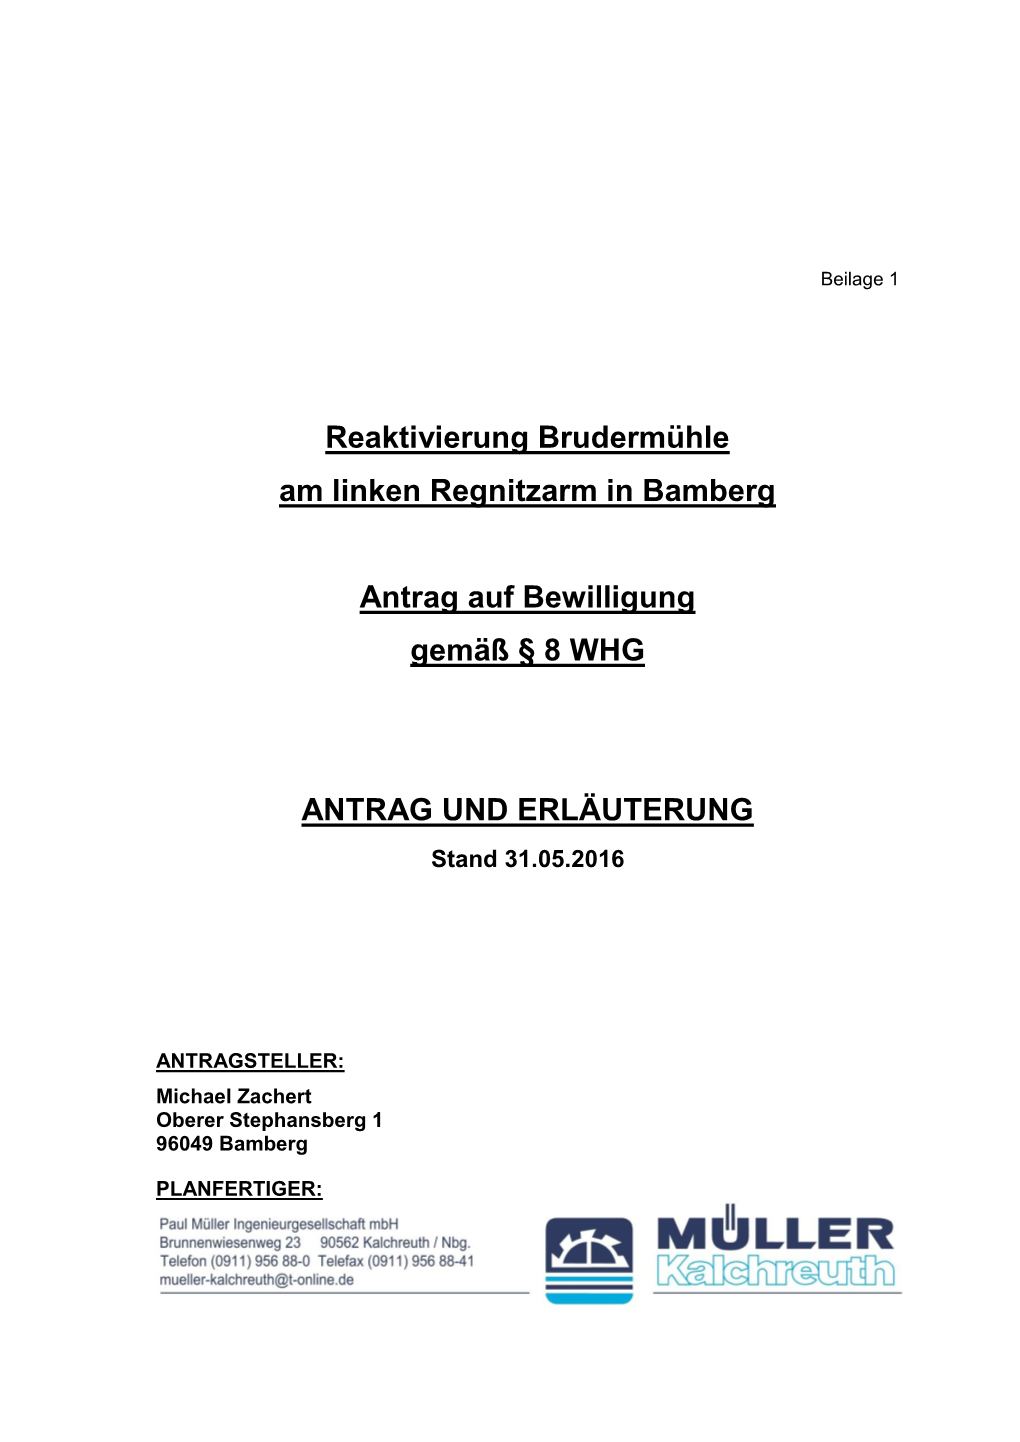 Reaktivierung Brudermühle Am Linken Regnitzarm in Bamberg Antrag Auf Bewilligung Gemäß § 8 WHG